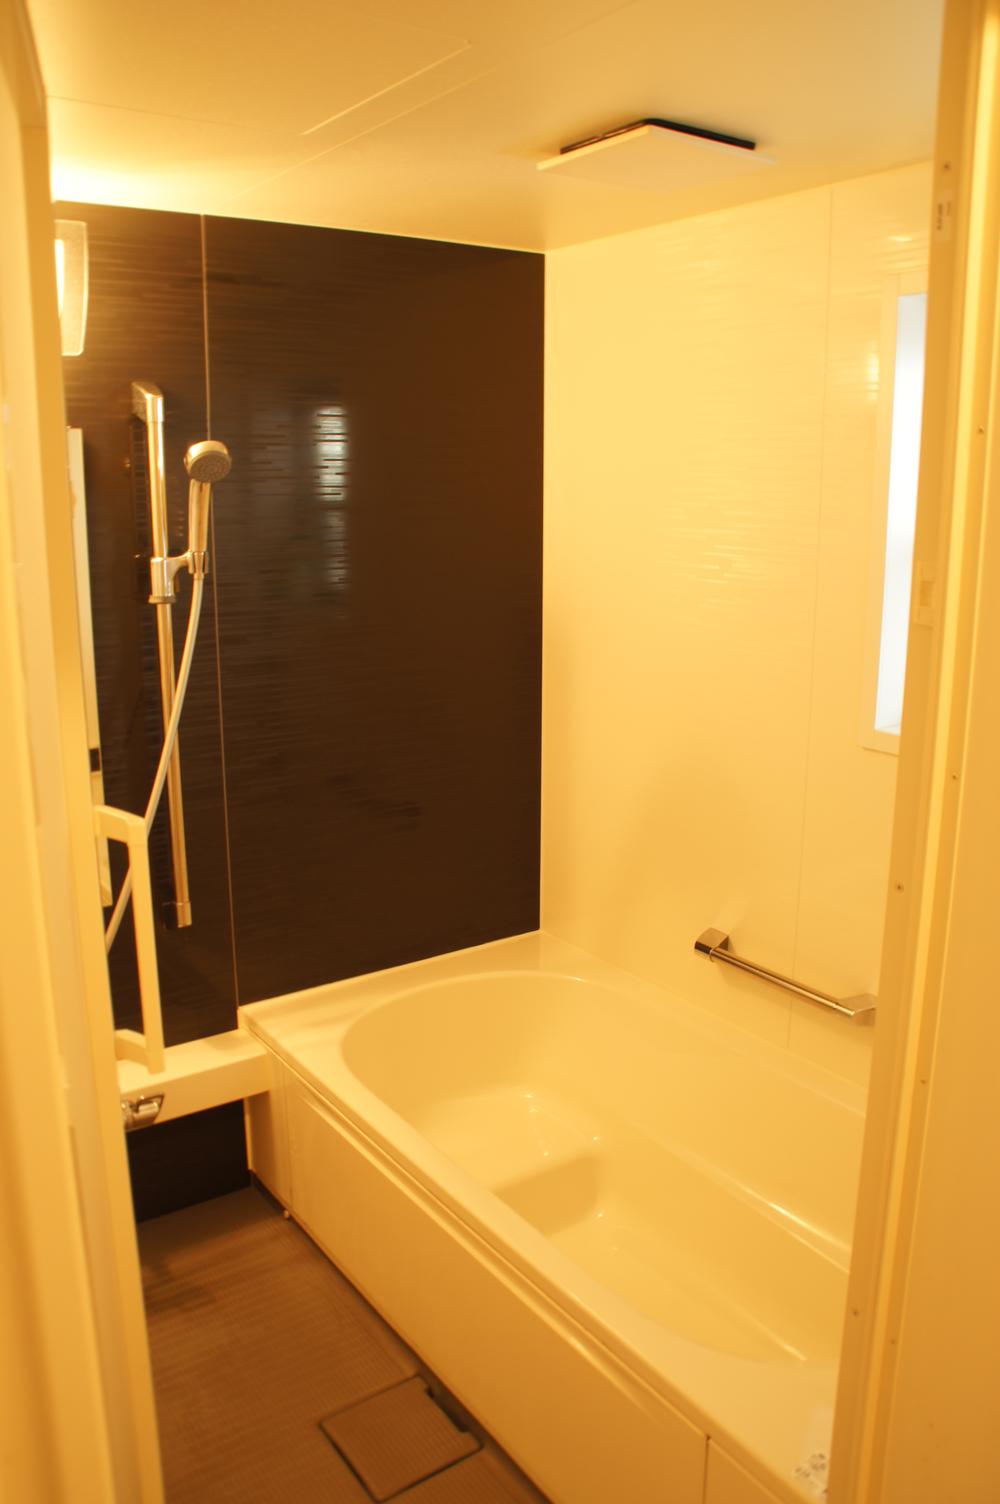 Bathroom. Indoor (June 2013) Shooting 1 pyeong type unit bus